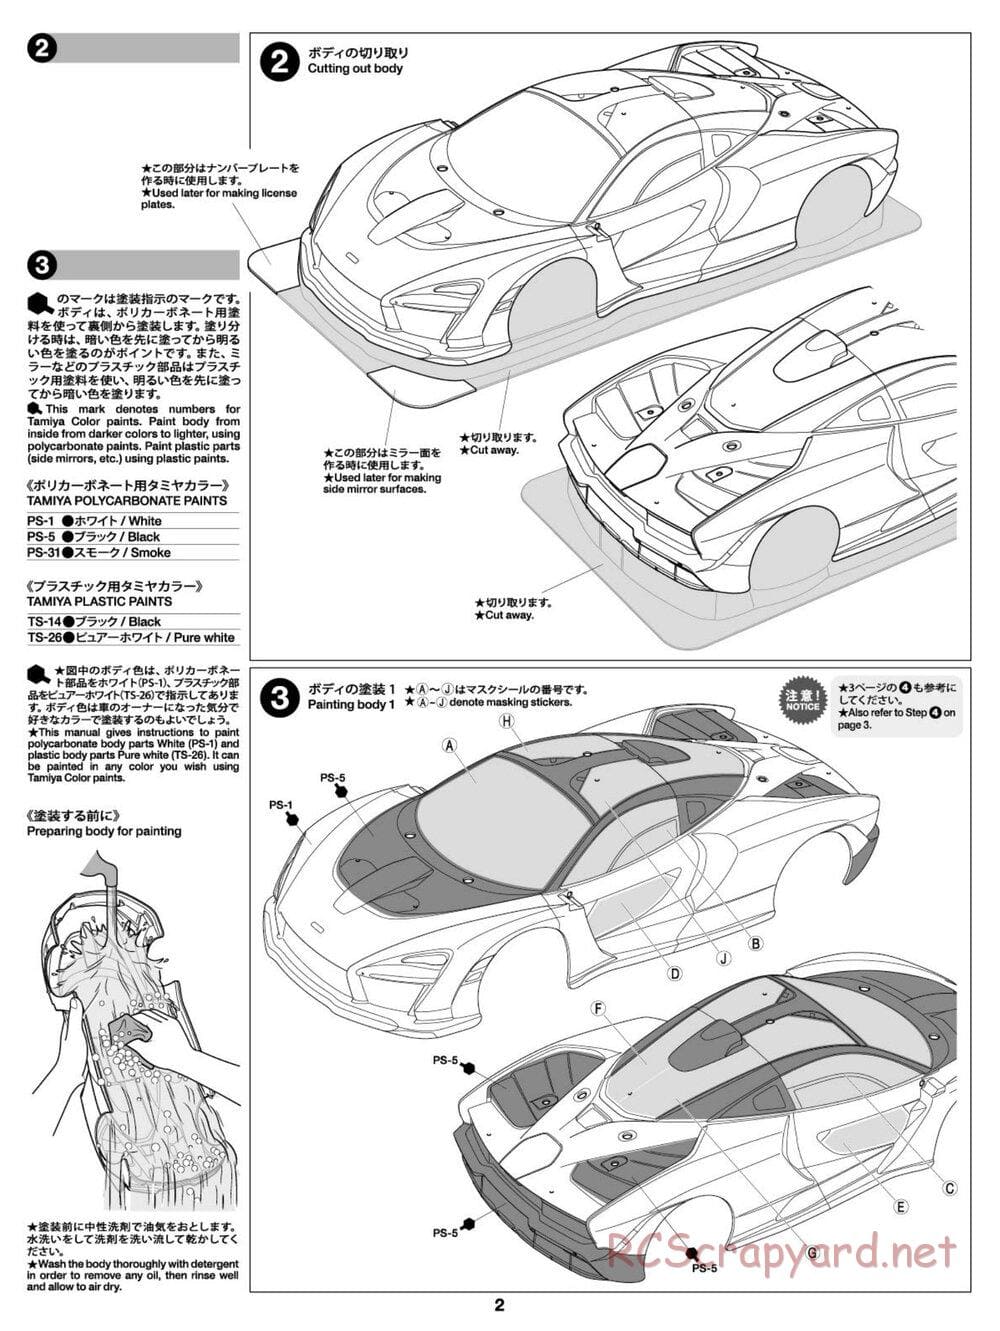 Tamiya - McLaren Senna - TT-02 Chassis - Body Manual - Page 2